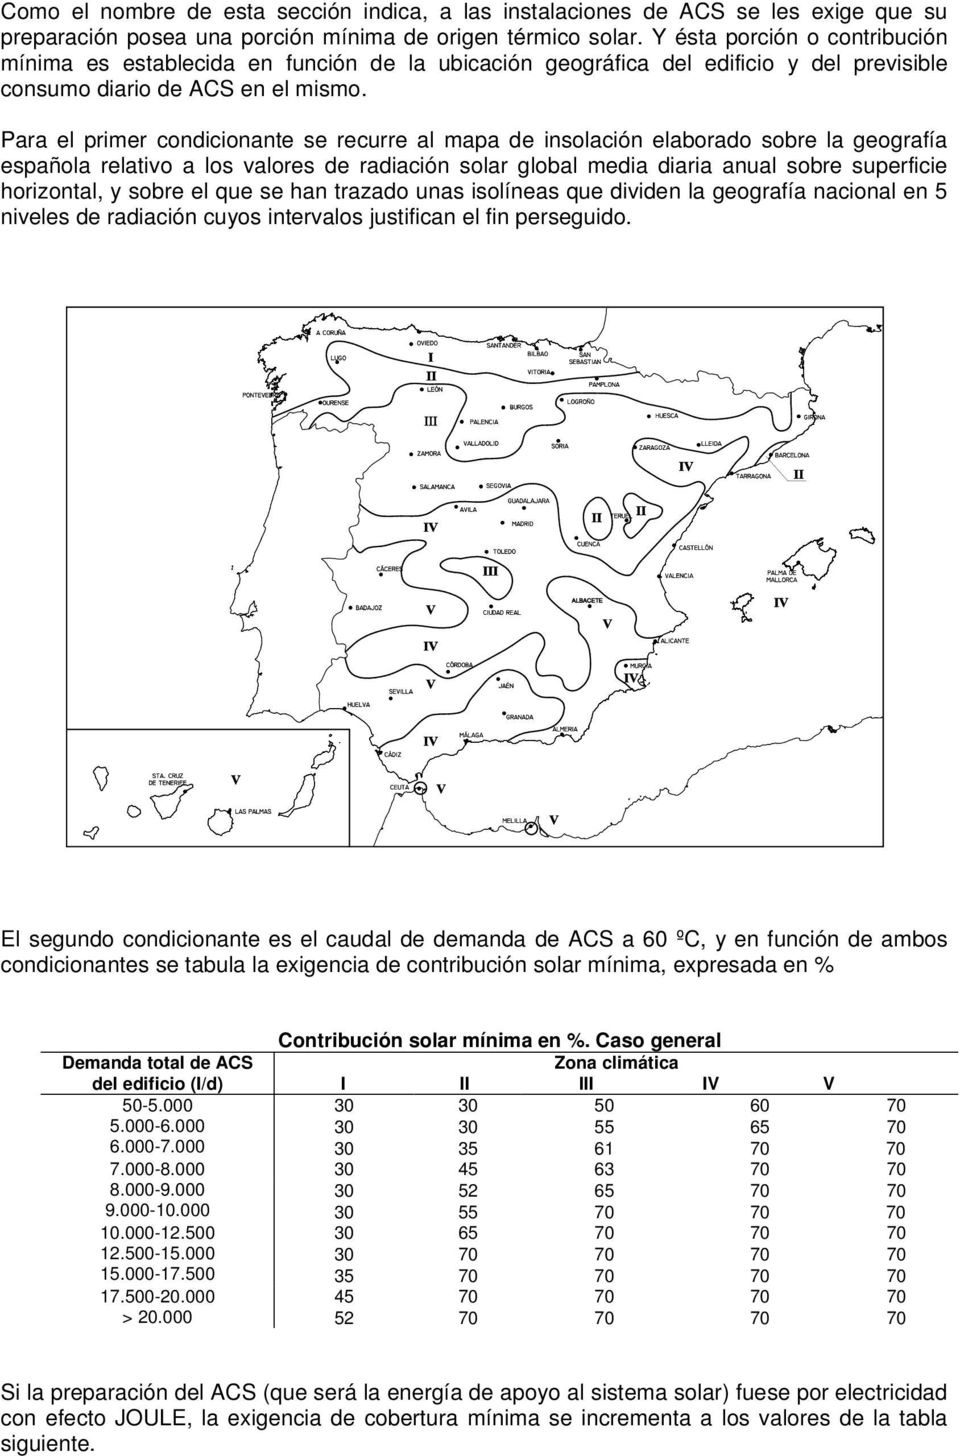 Para el primer condicionante se recurre al mapa de insolación elaborado sobre la geografía española relativo a los valores de radiación solar global media diaria anual sobre superficie horizontal, y